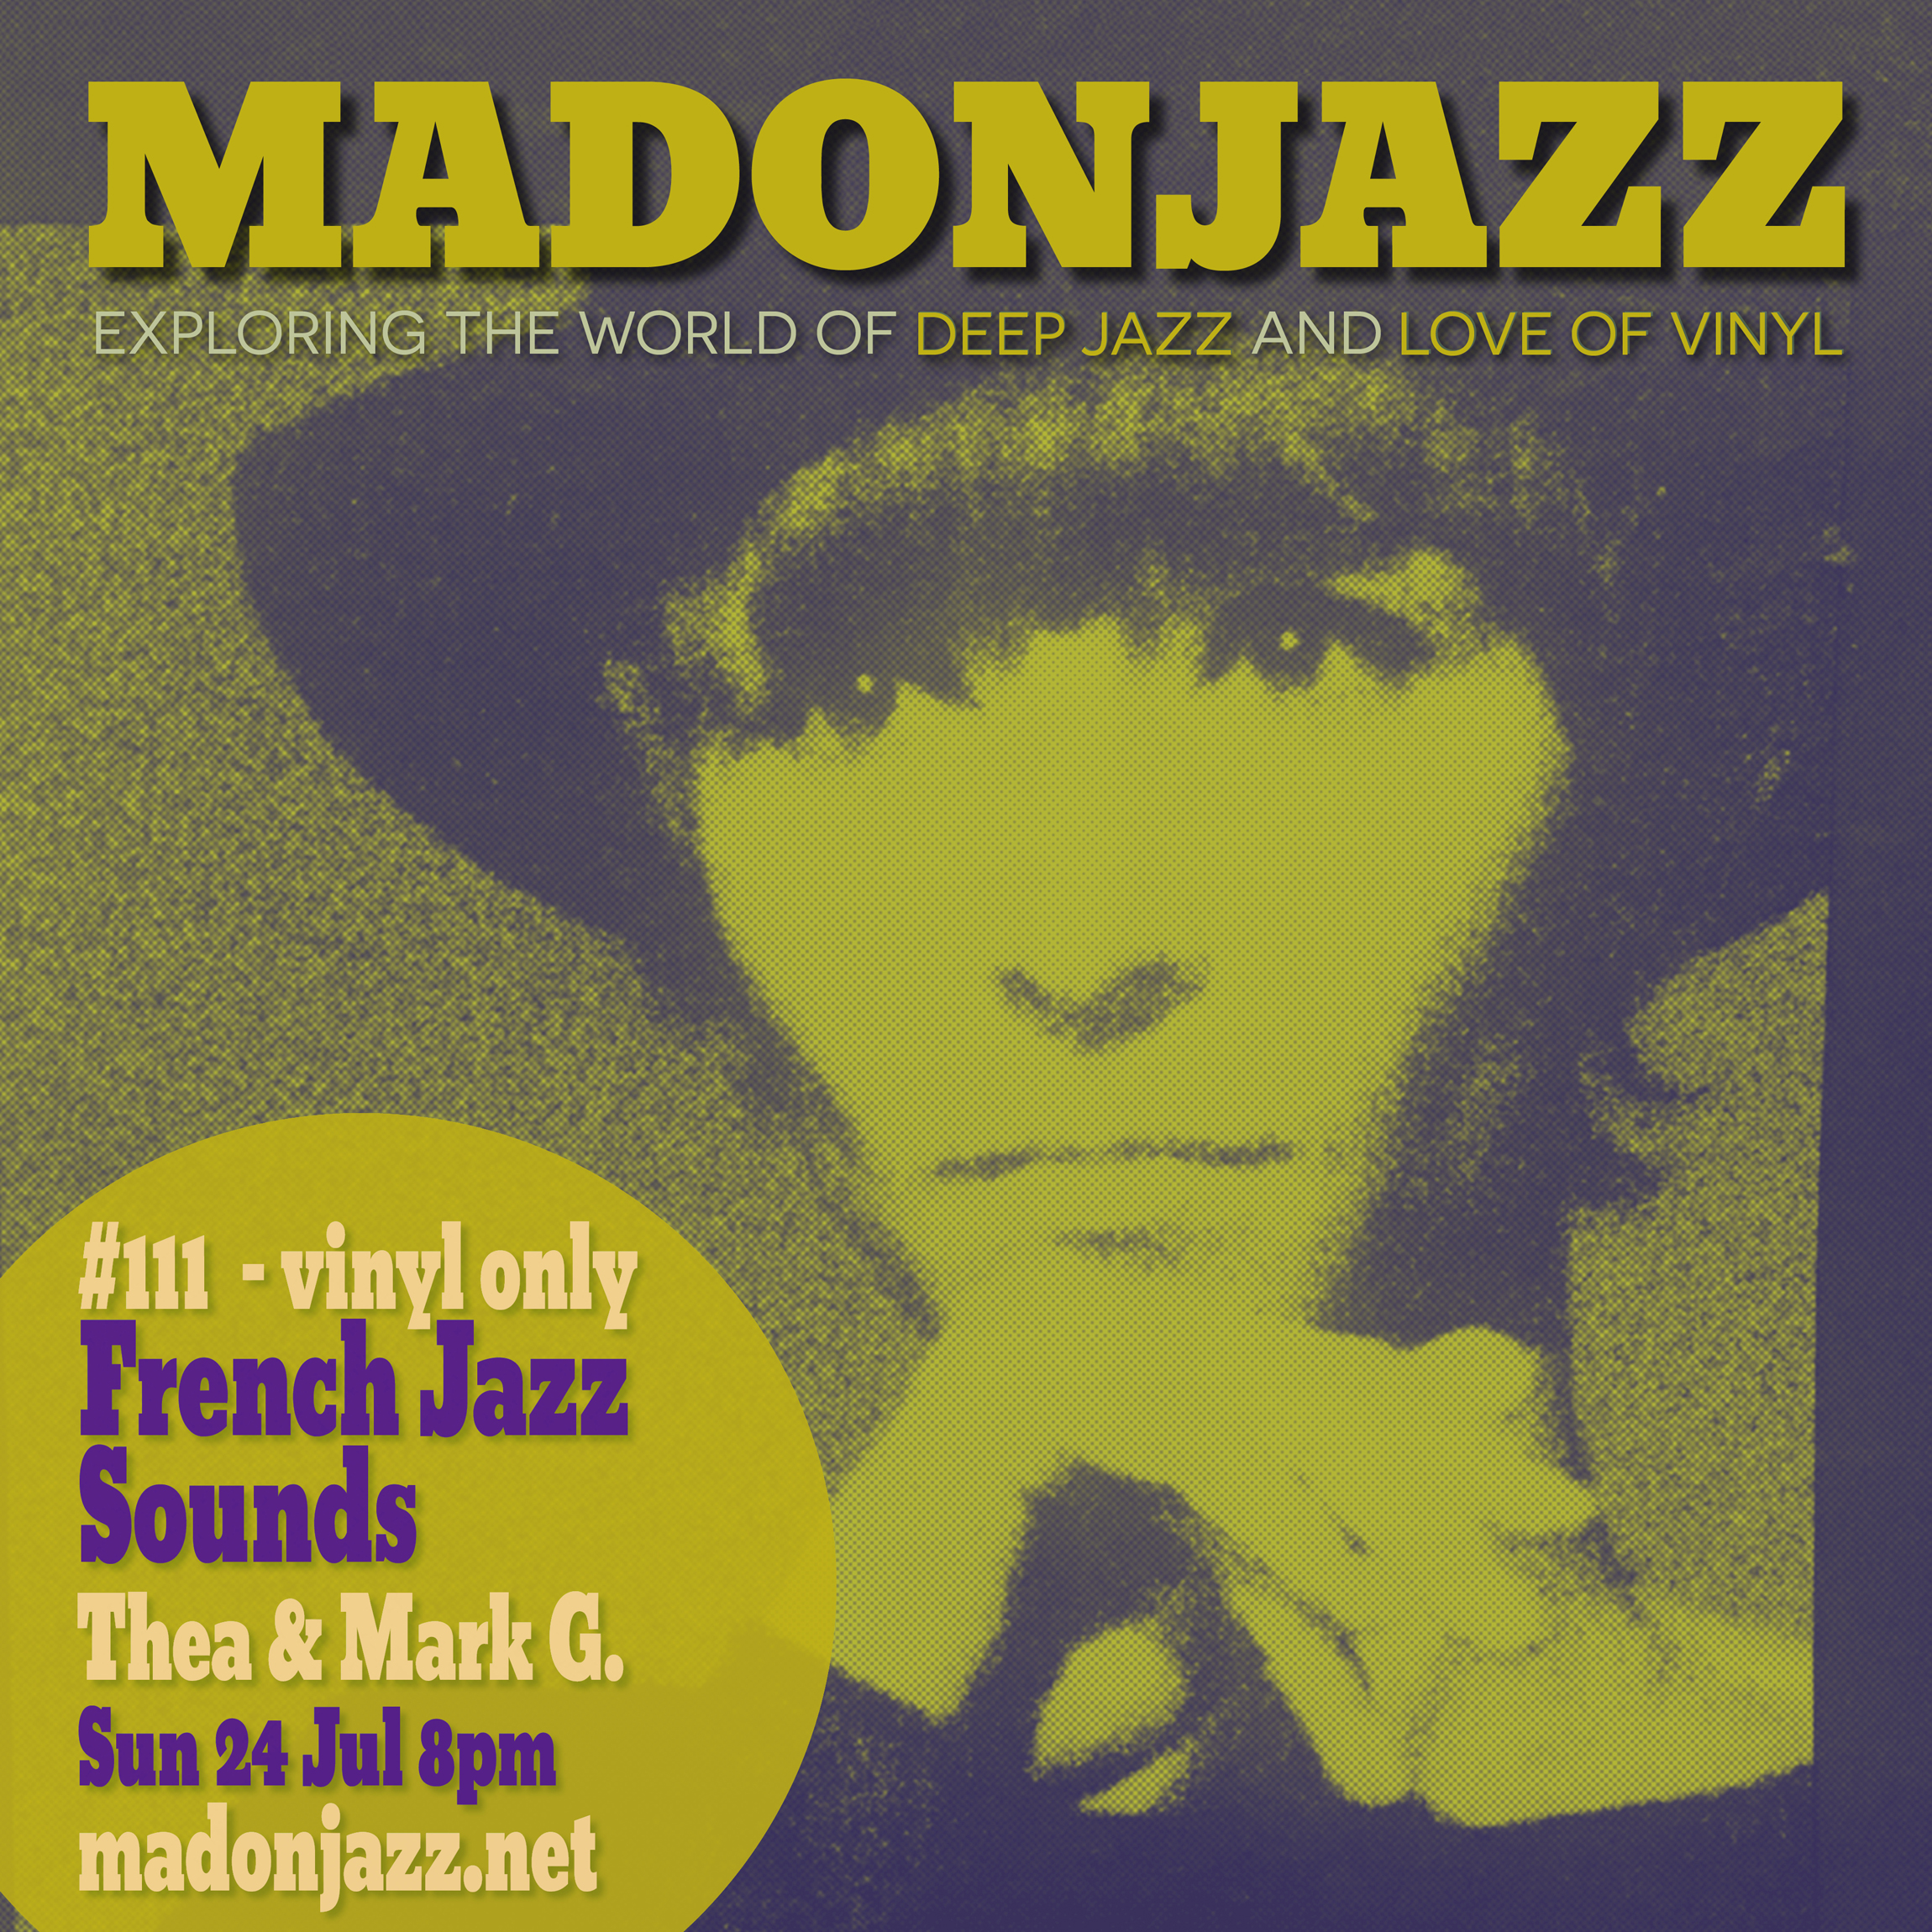 MADONJAZZ #111: French Jazz Sounds